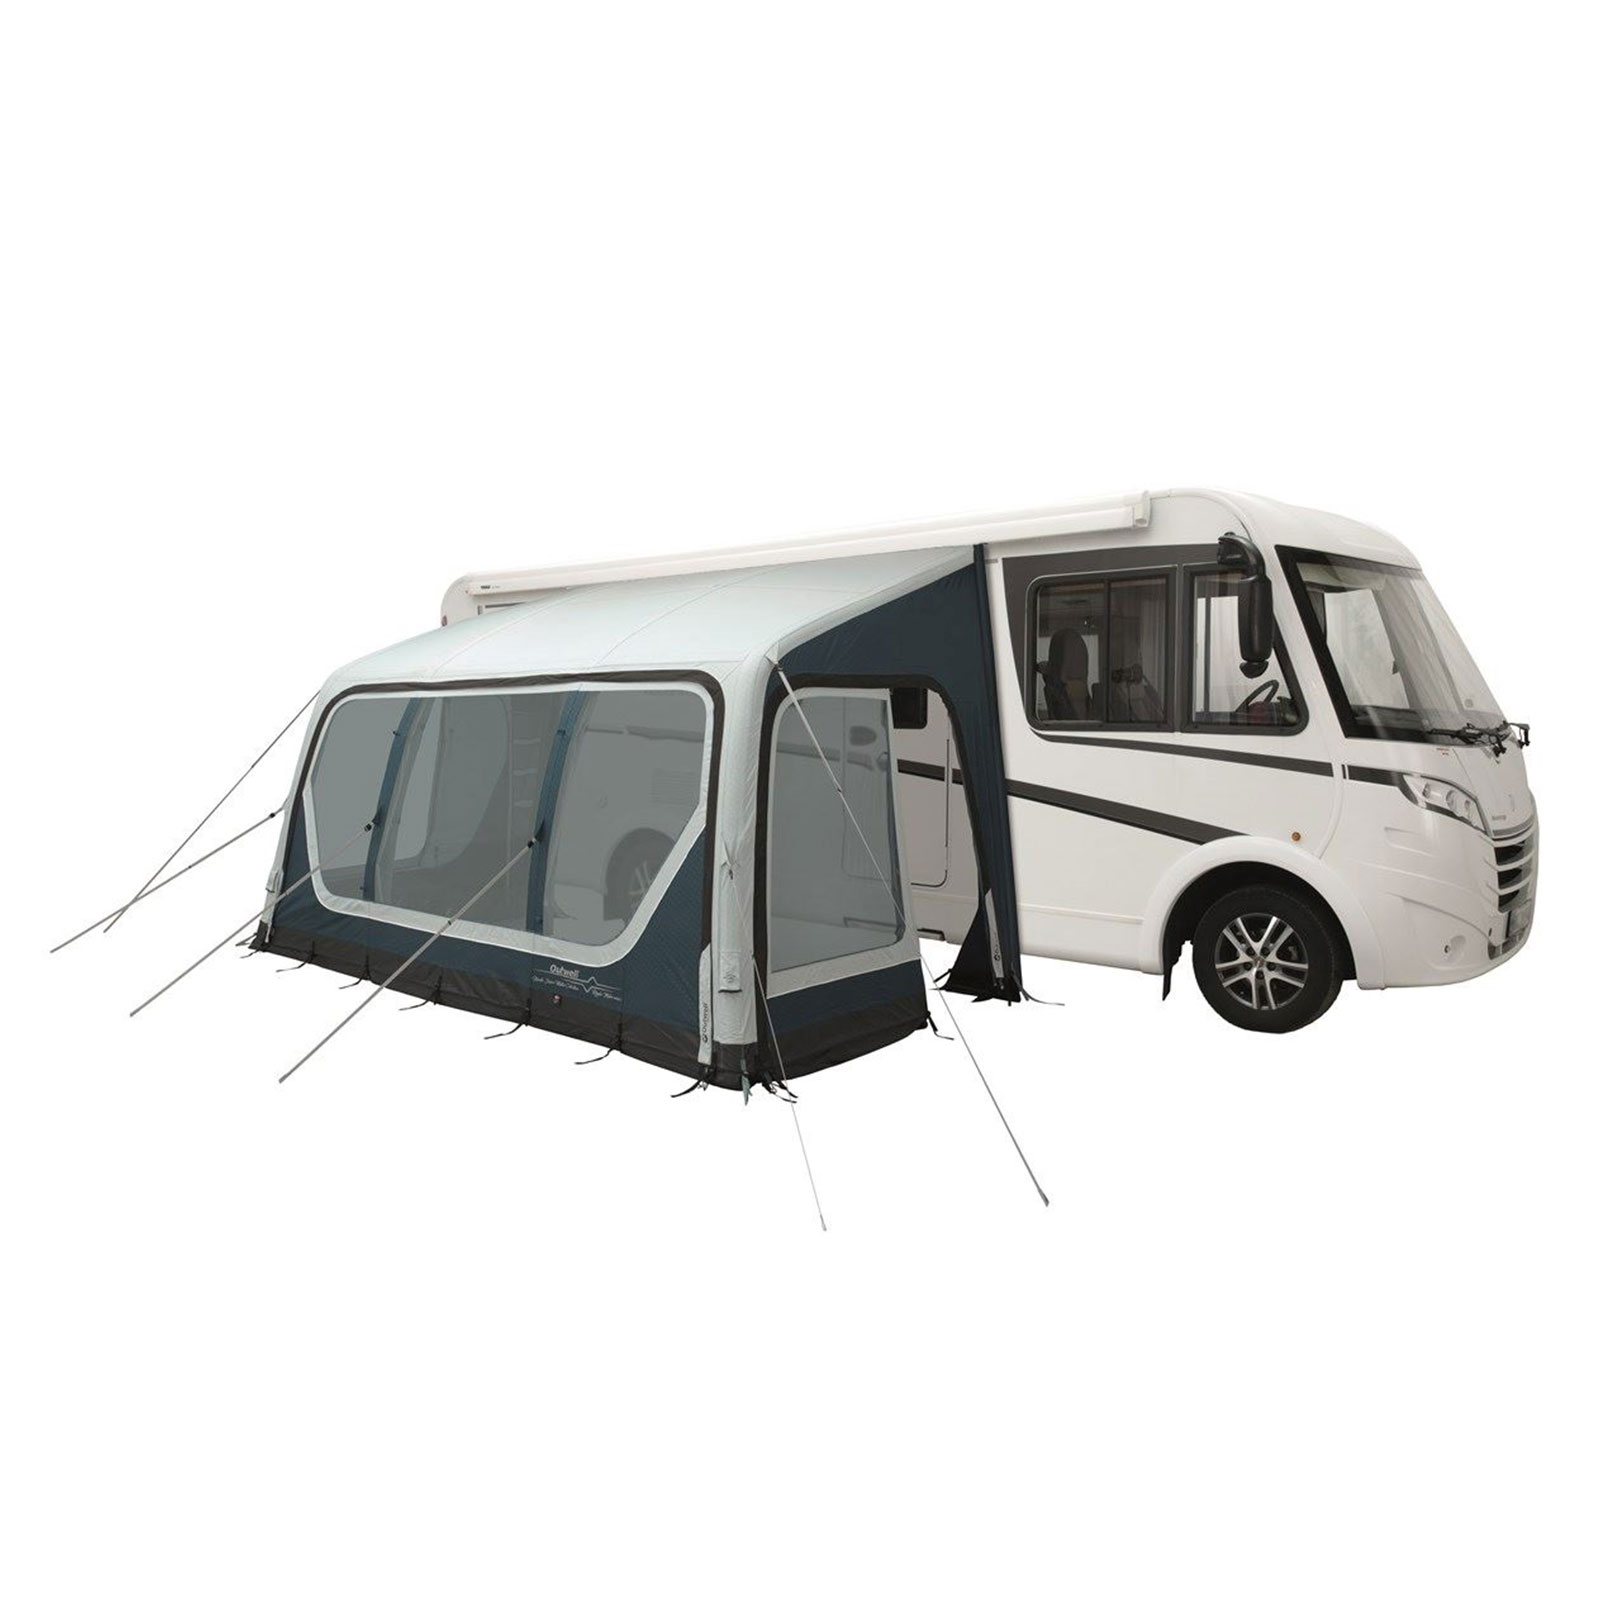 Vorzelt 250x440 Ripple-L Markise für Caravan, Reisemobil, Camper Camping Vordach